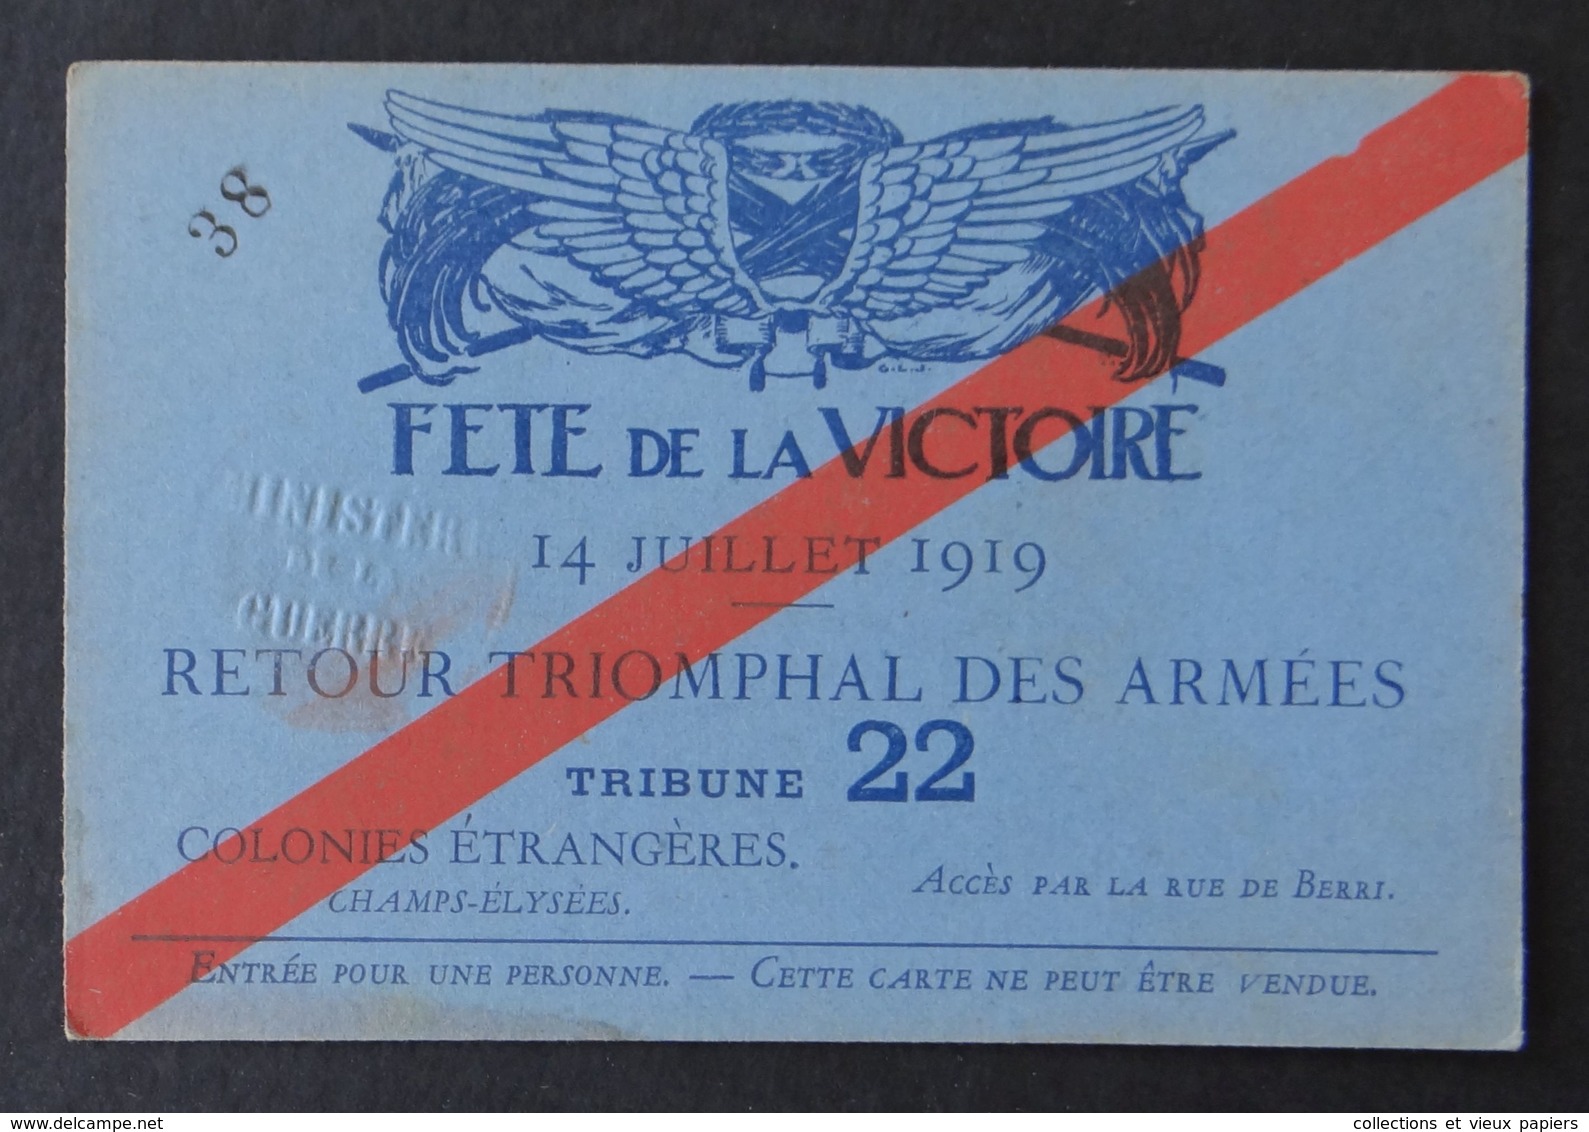 Ticket FÊTE DE LA VICTOIRE 14 Juillet 1919 Retour Triomphal Des Armées Tribune 22 Colonies Champs-Elysée - Tickets D'entrée